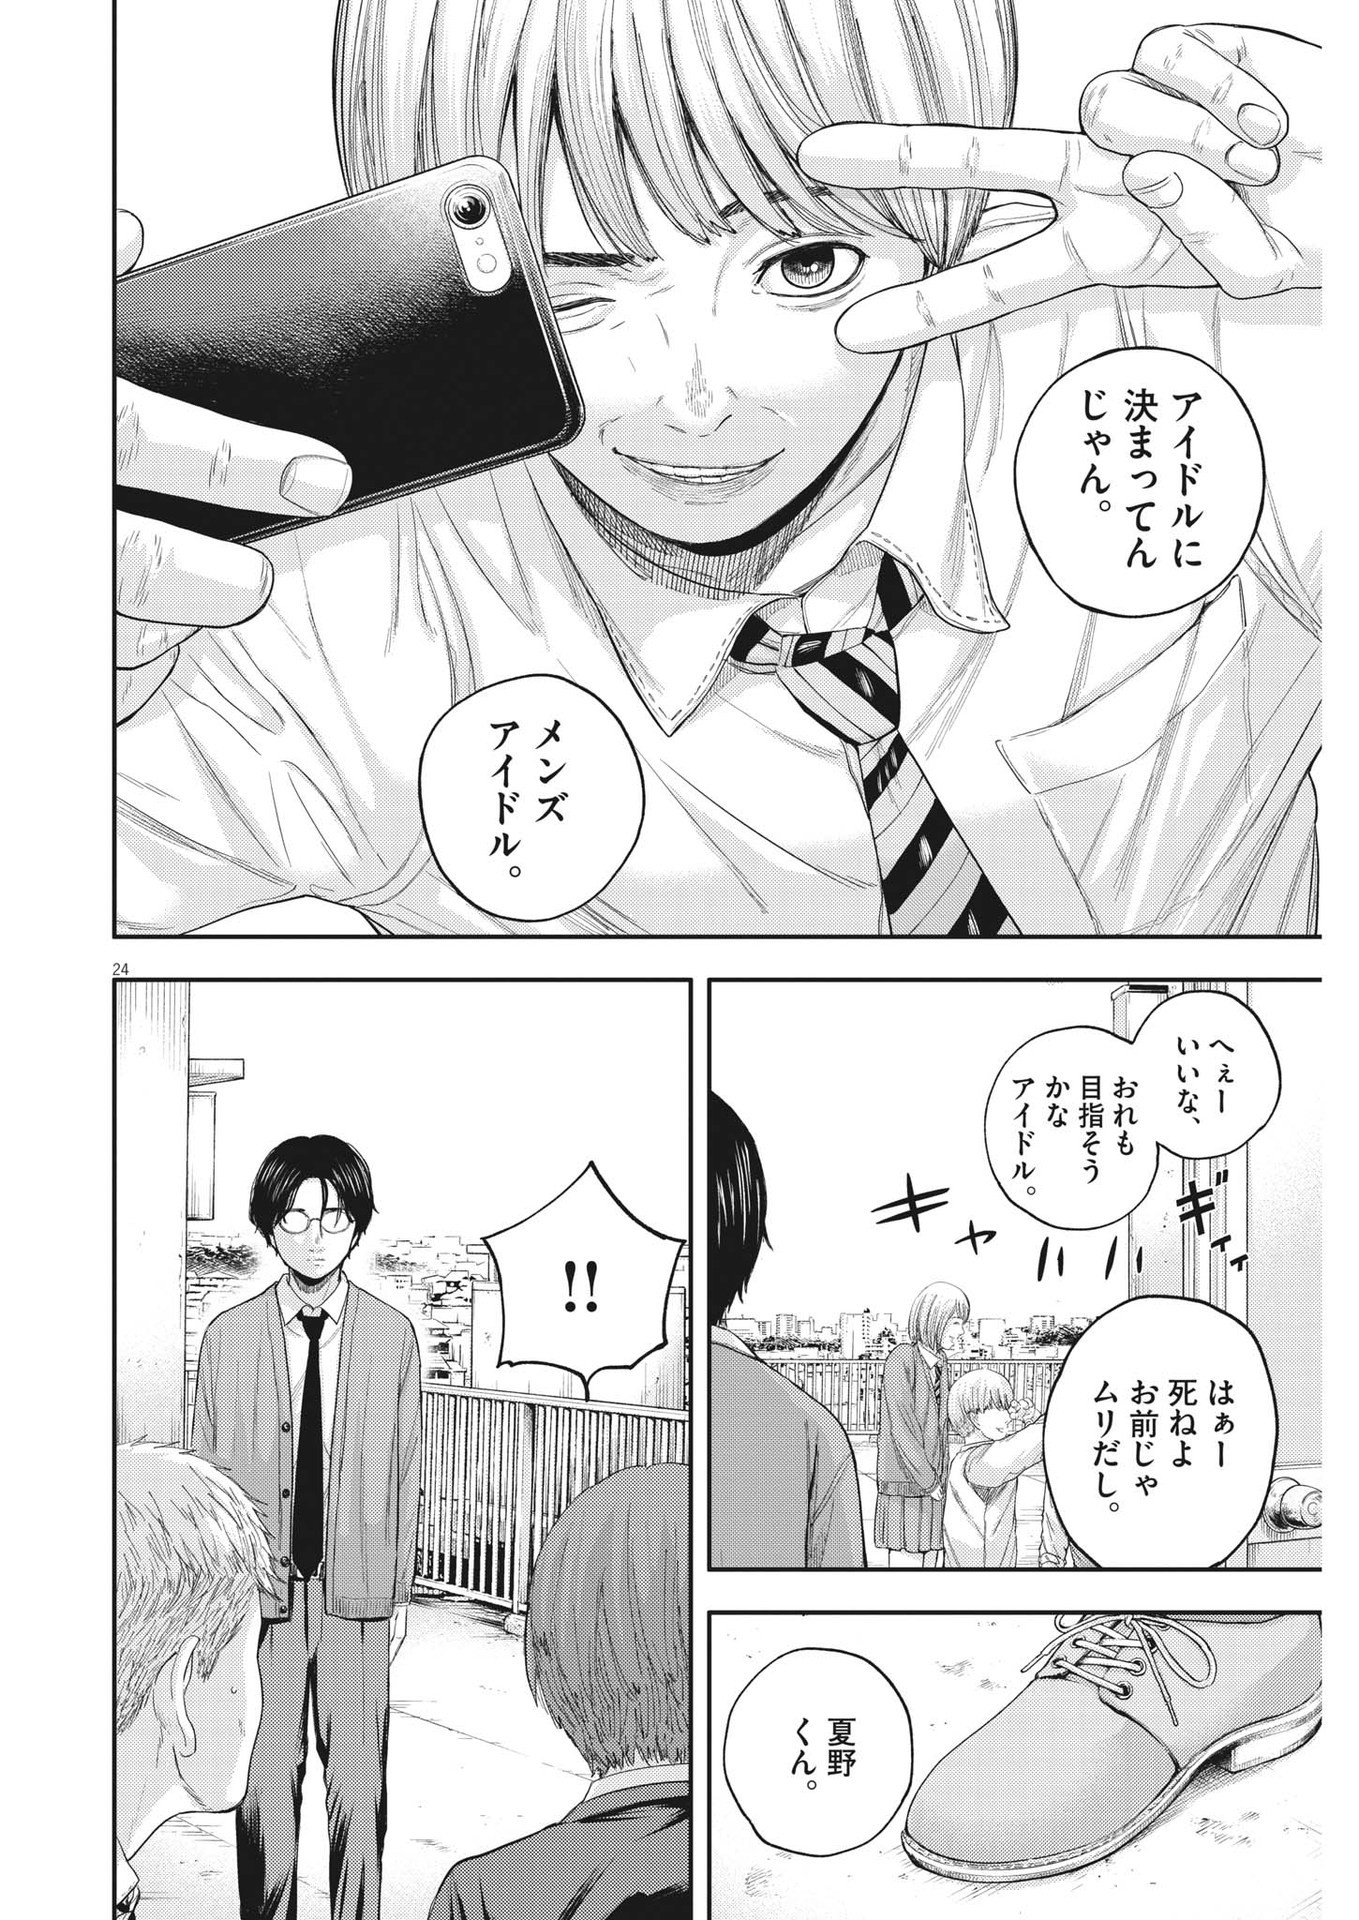 Yumenashi-sensei no Shinroshidou - Chapter 6 - Page 24